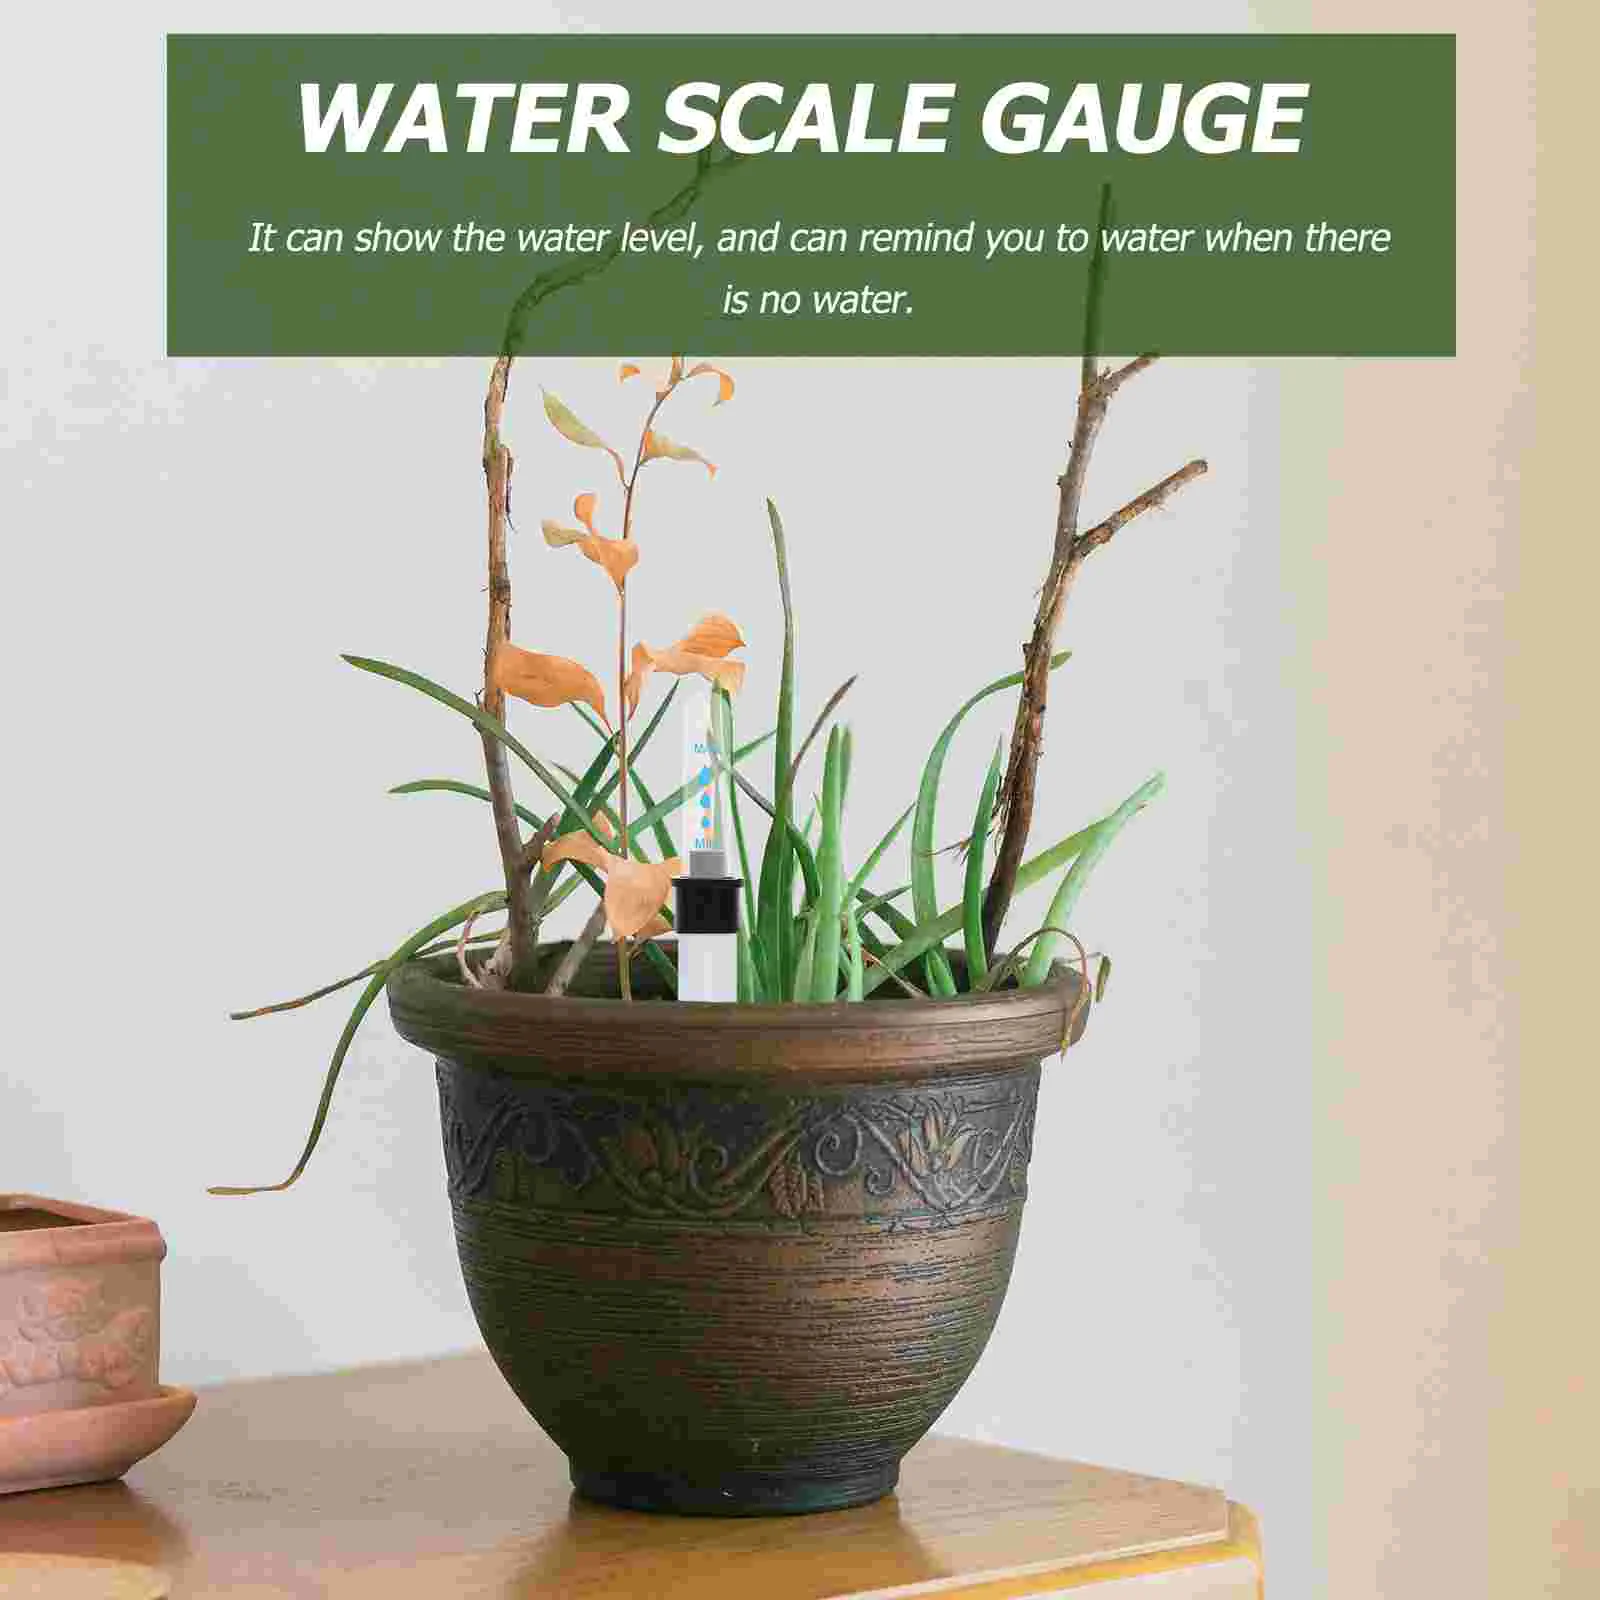 напоминание об уровне воды 4шт Индикатор уровня воды в горшке на открытом воздухе Индикатор уровня воды для воды в садовом домике 2